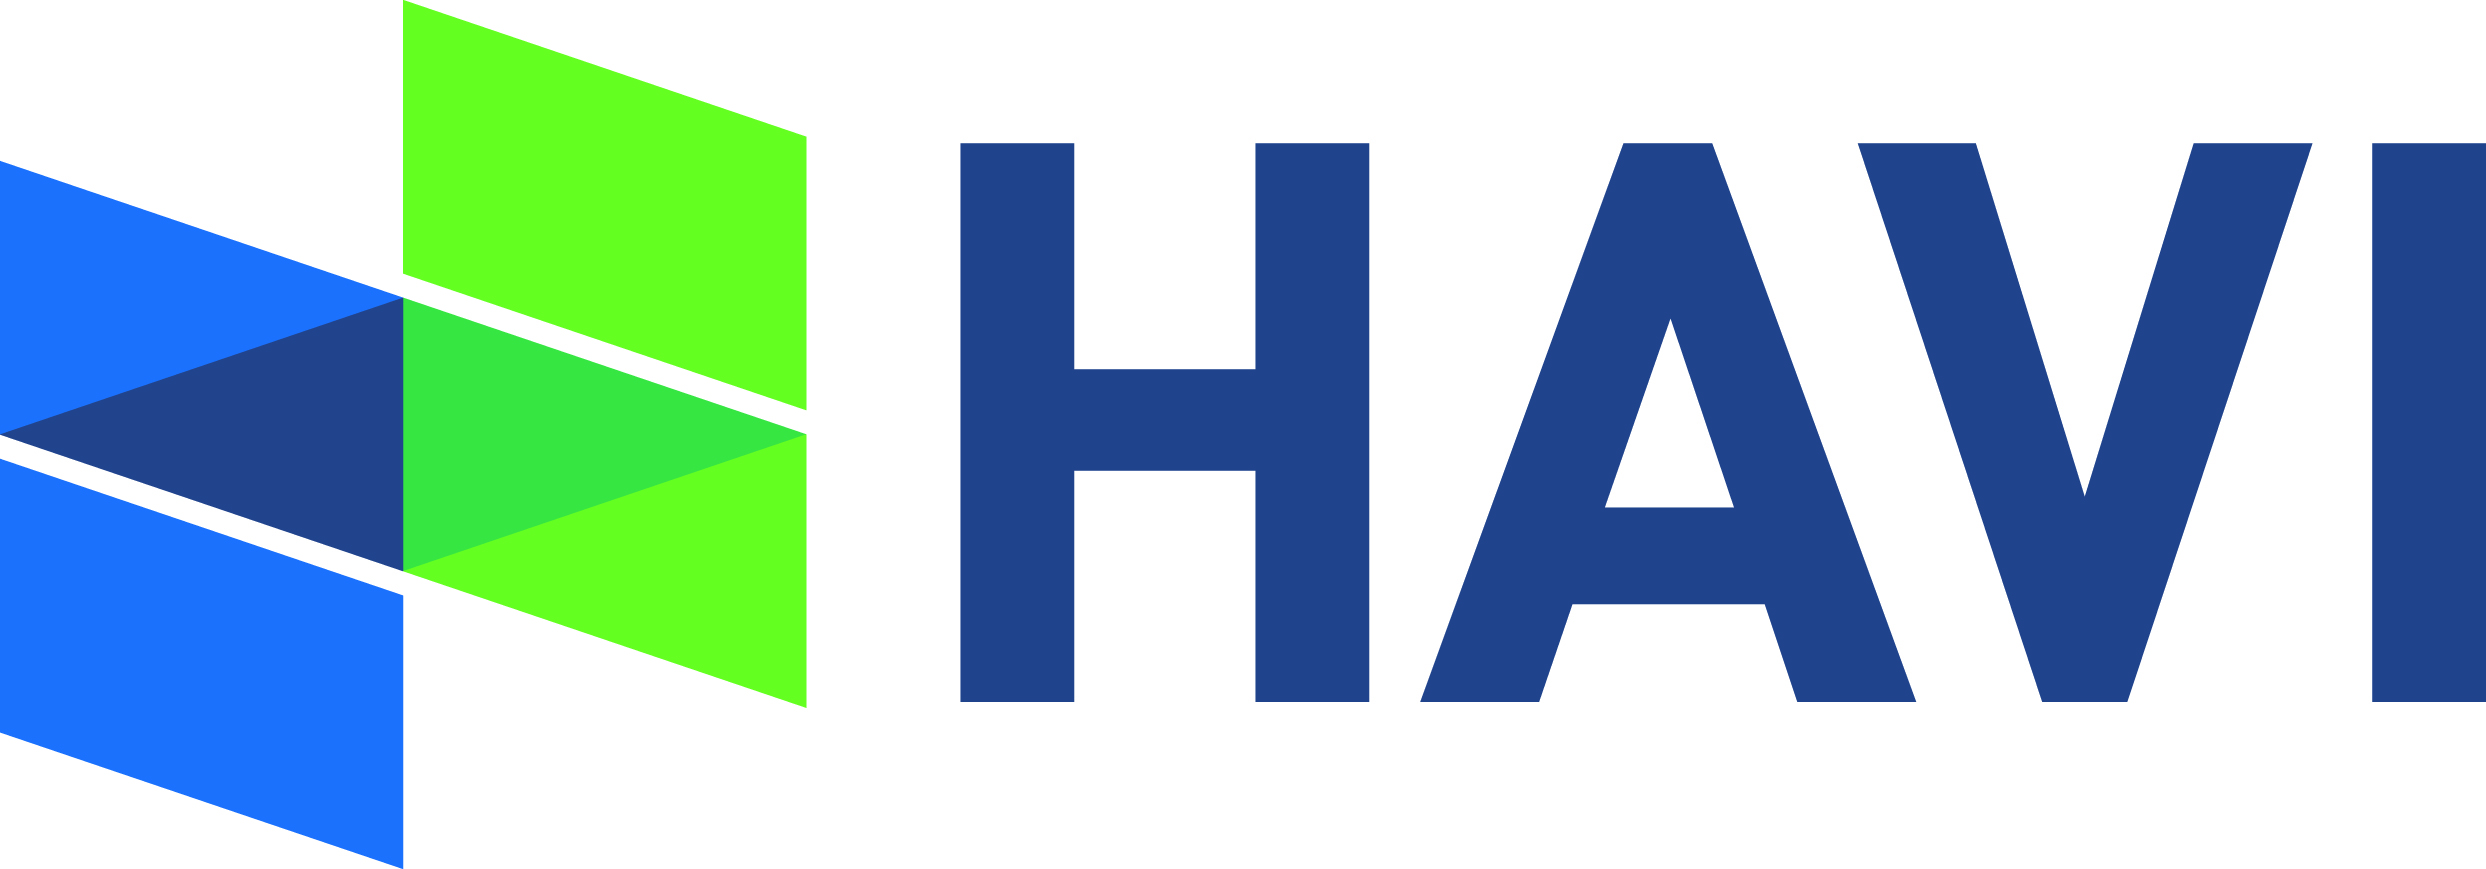 havi_full_logo